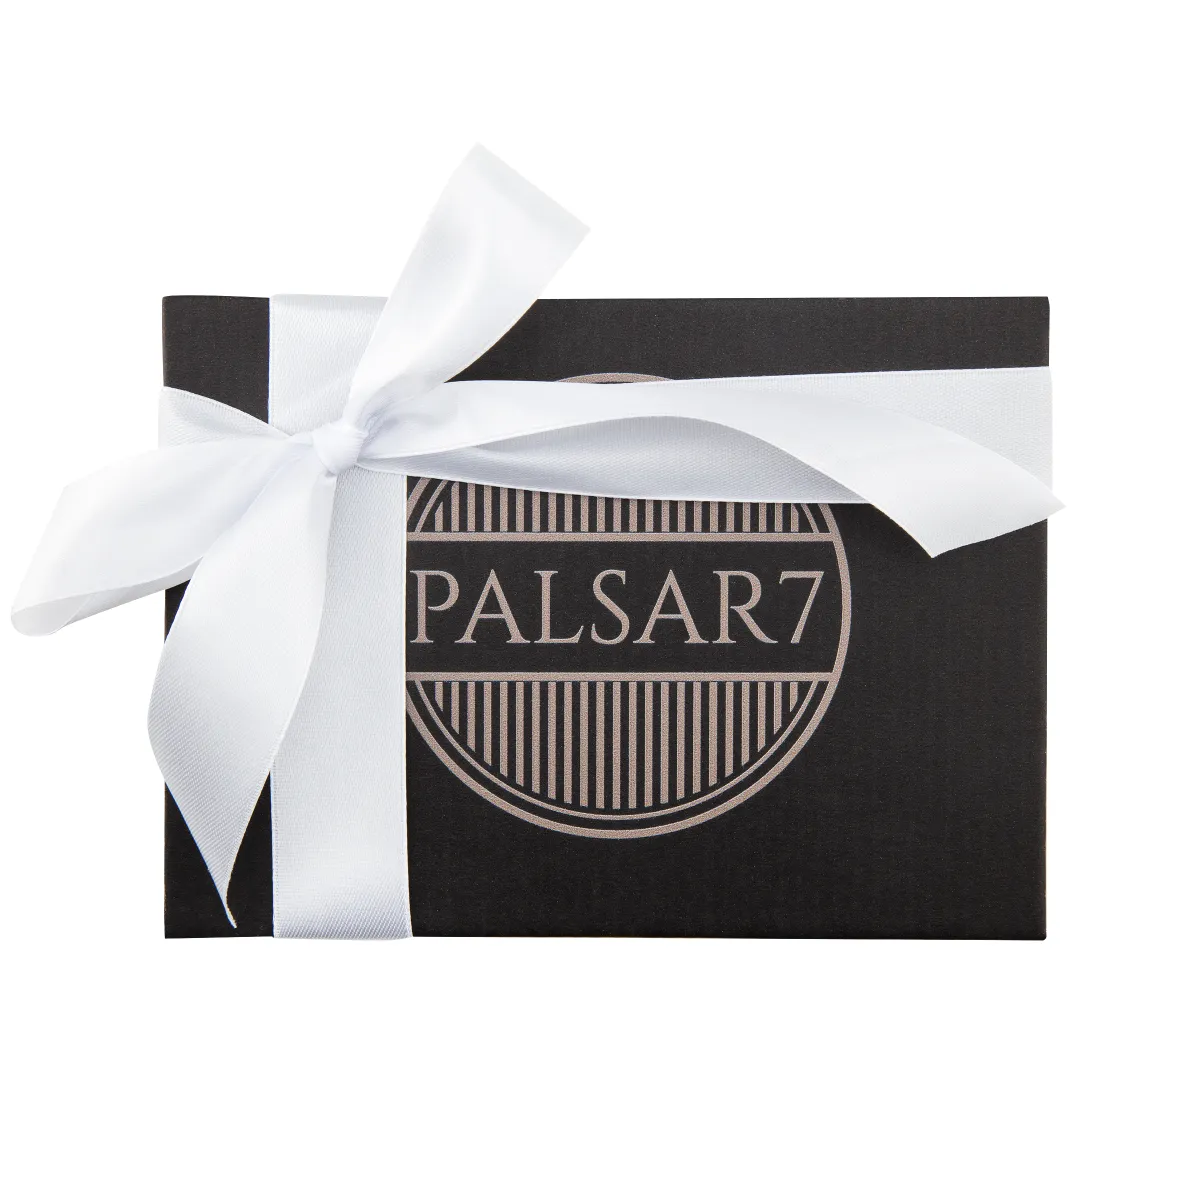 Palsar7 Ultrazvuková špachtle k péči o pleť 